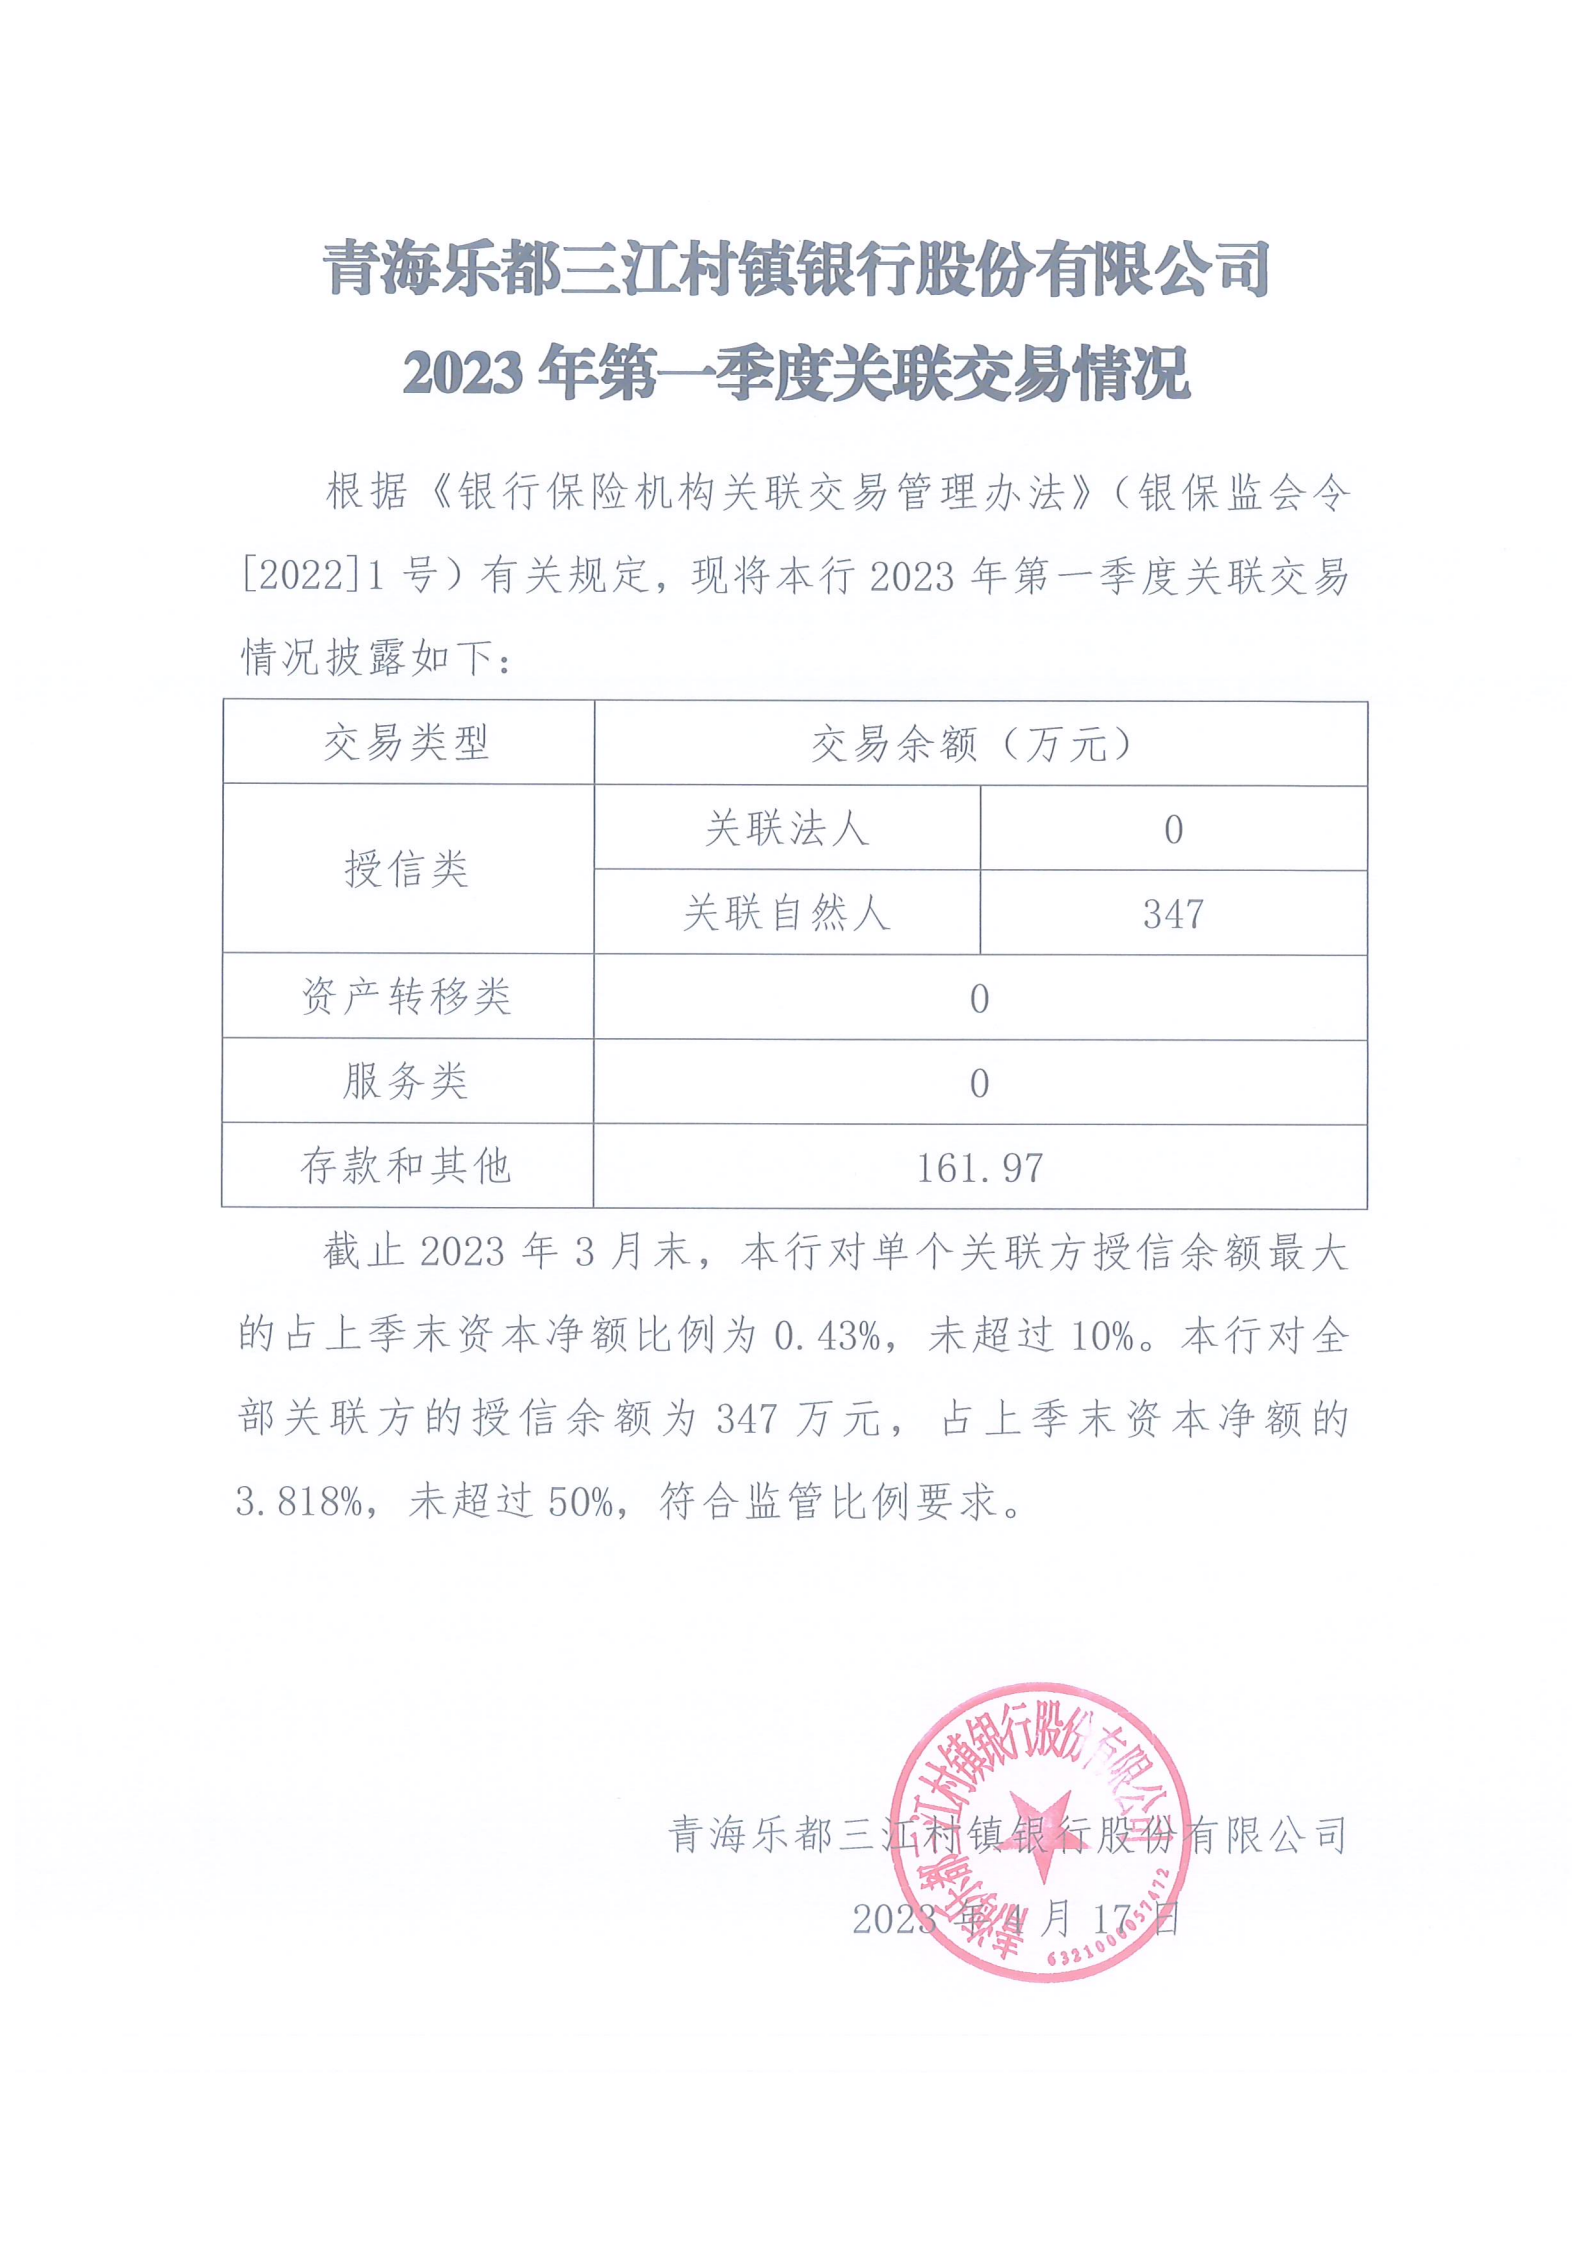 青海乐都三江村镇银行股份有限公司2023年第一季度关联交易情况（披露）_00